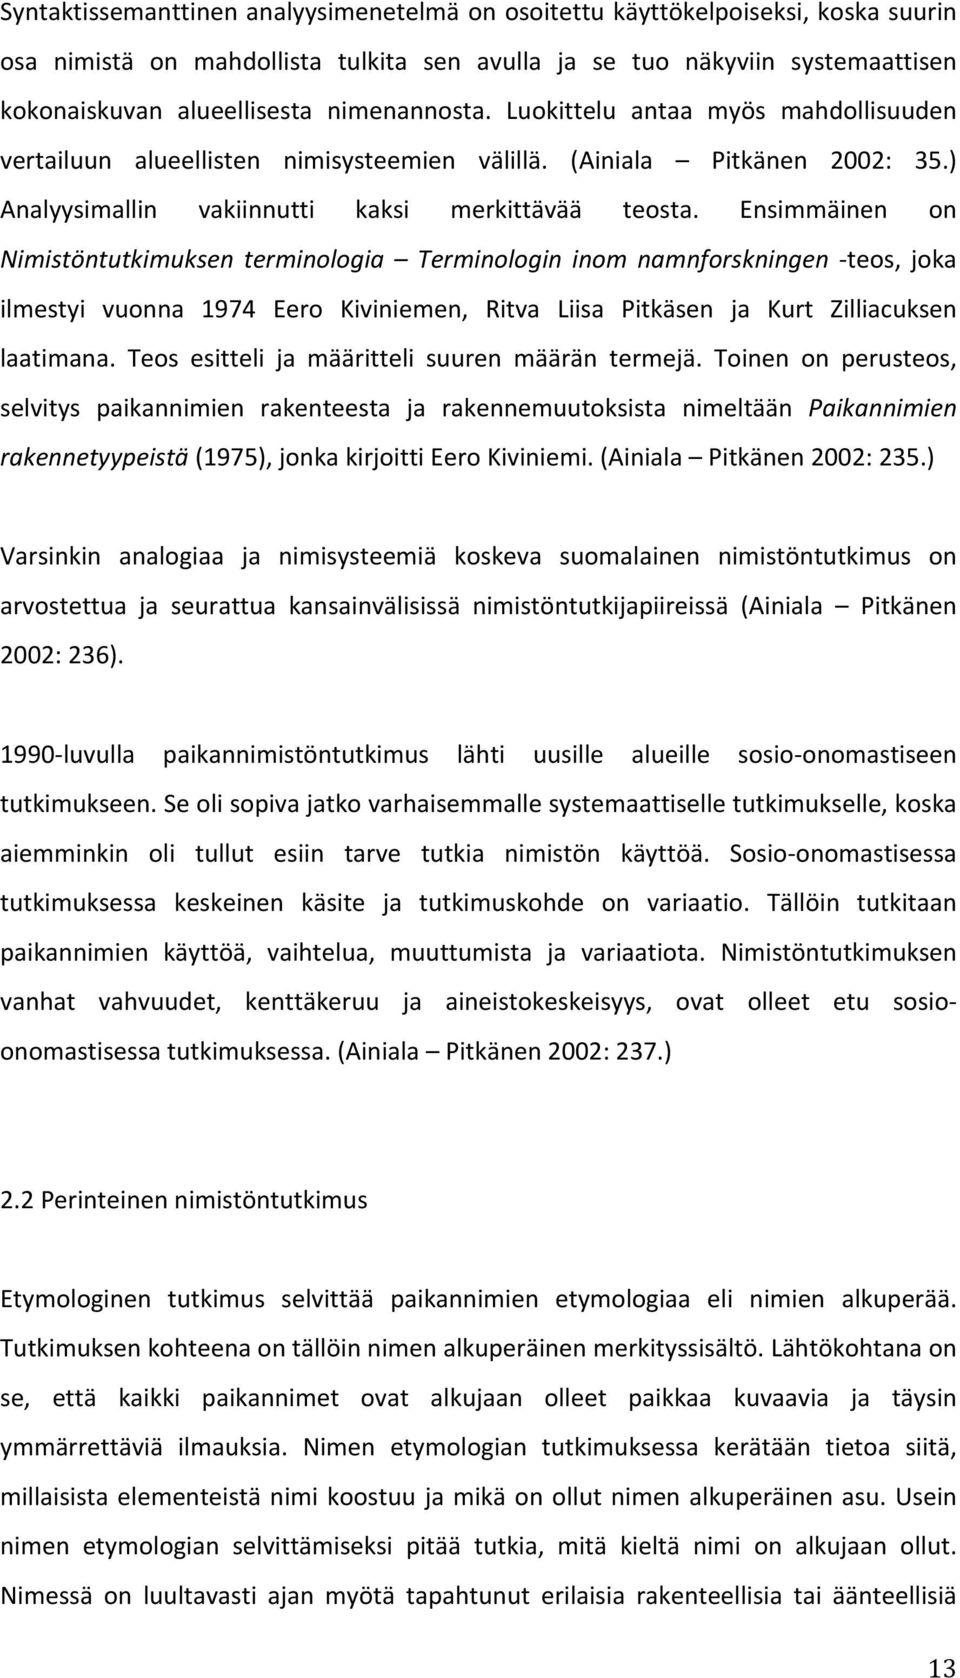 Ensimmäinen on Nimistöntutkimuksen terminologia Terminologin inom namnforskningen - teos, joka ilmestyi vuonna 1974 Eero Kiviniemen, Ritva Liisa Pitkäsen ja Kurt Zilliacuksen laatimana.